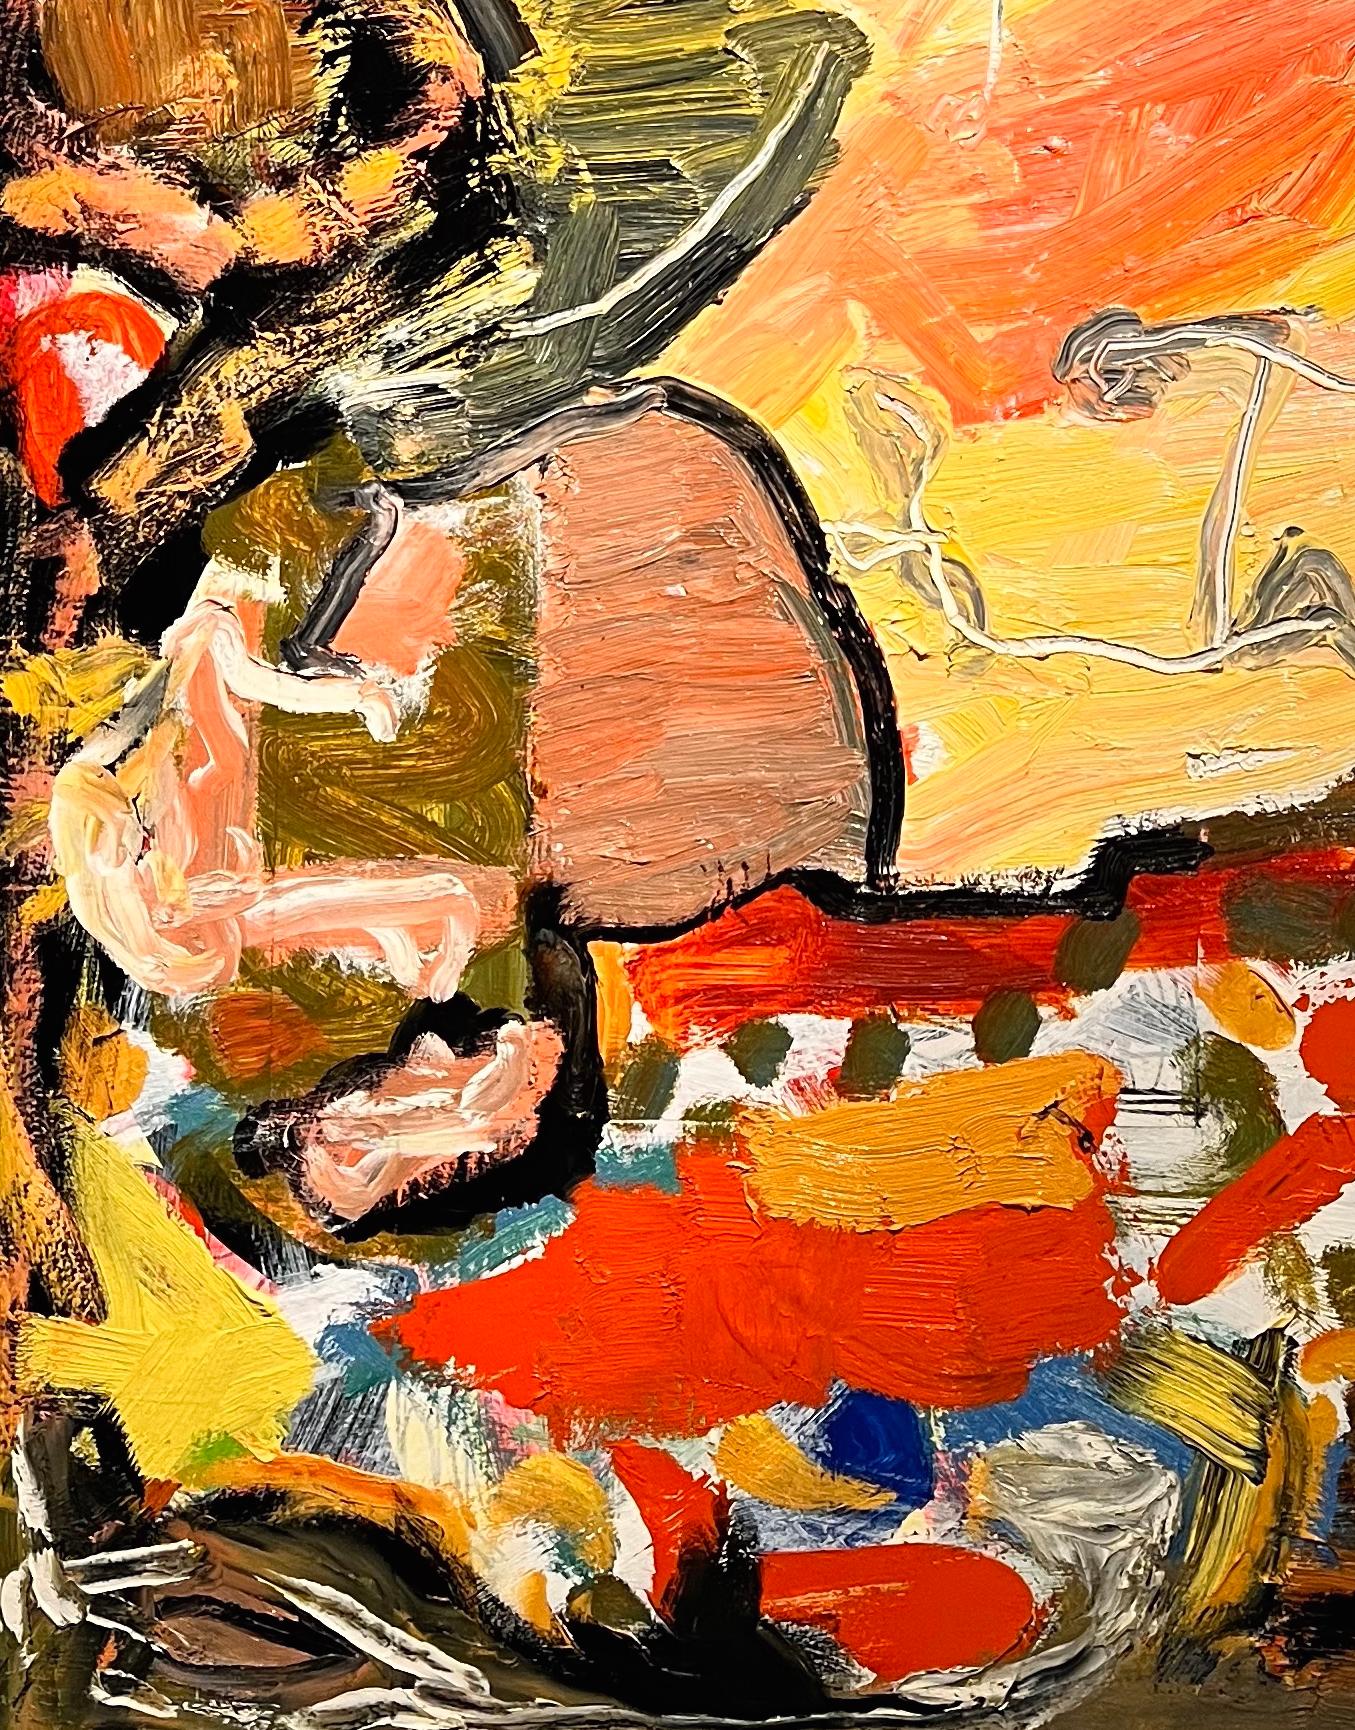 Cette œuvre vibrante de Dick Wray, artiste de Houston aujourd'hui décédé, est une peinture à l'huile abstraite dans le style de l'expressionnisme abstrait. D'épaisses couches de peinture favorisent une tactilité remarquable que l'on retrouve